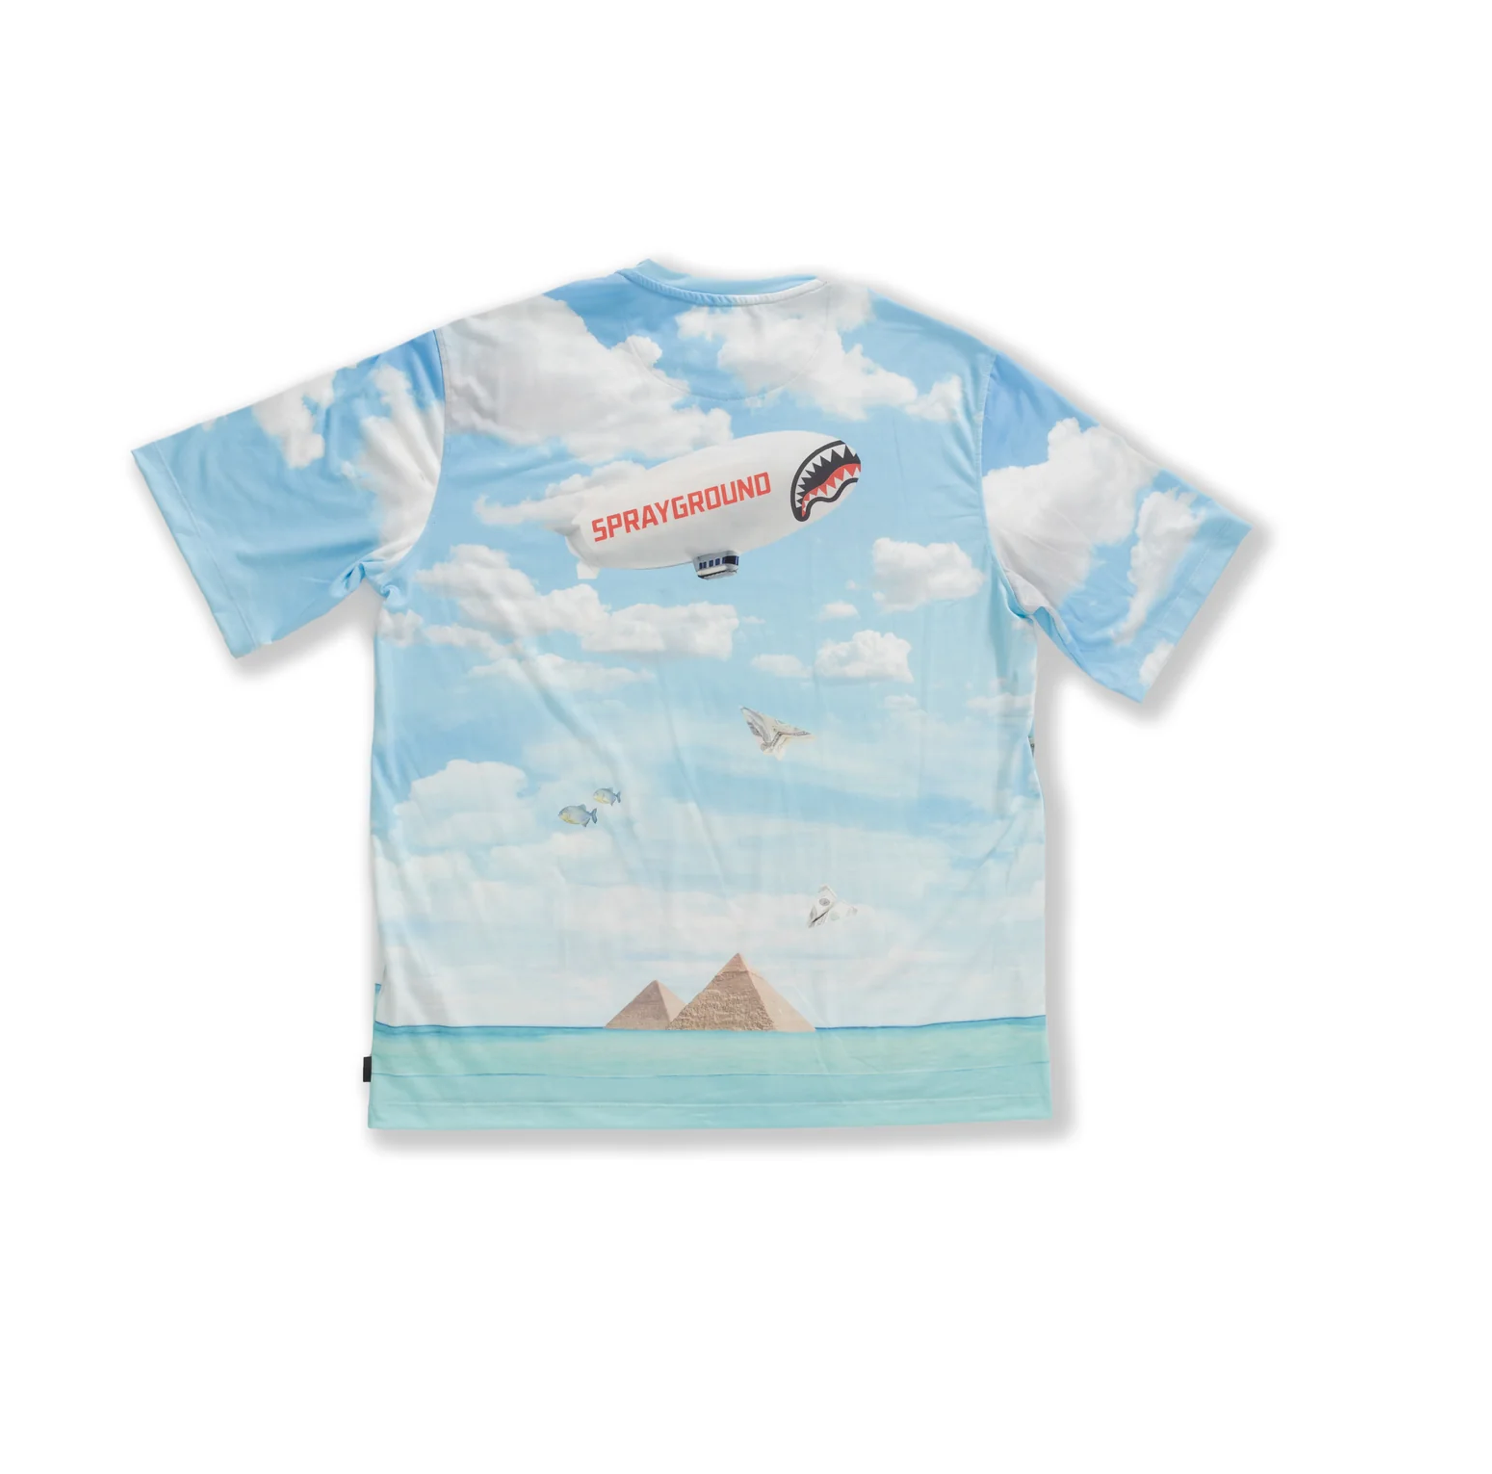 T-shirt SPRAYGROUND underwater shark island SP510